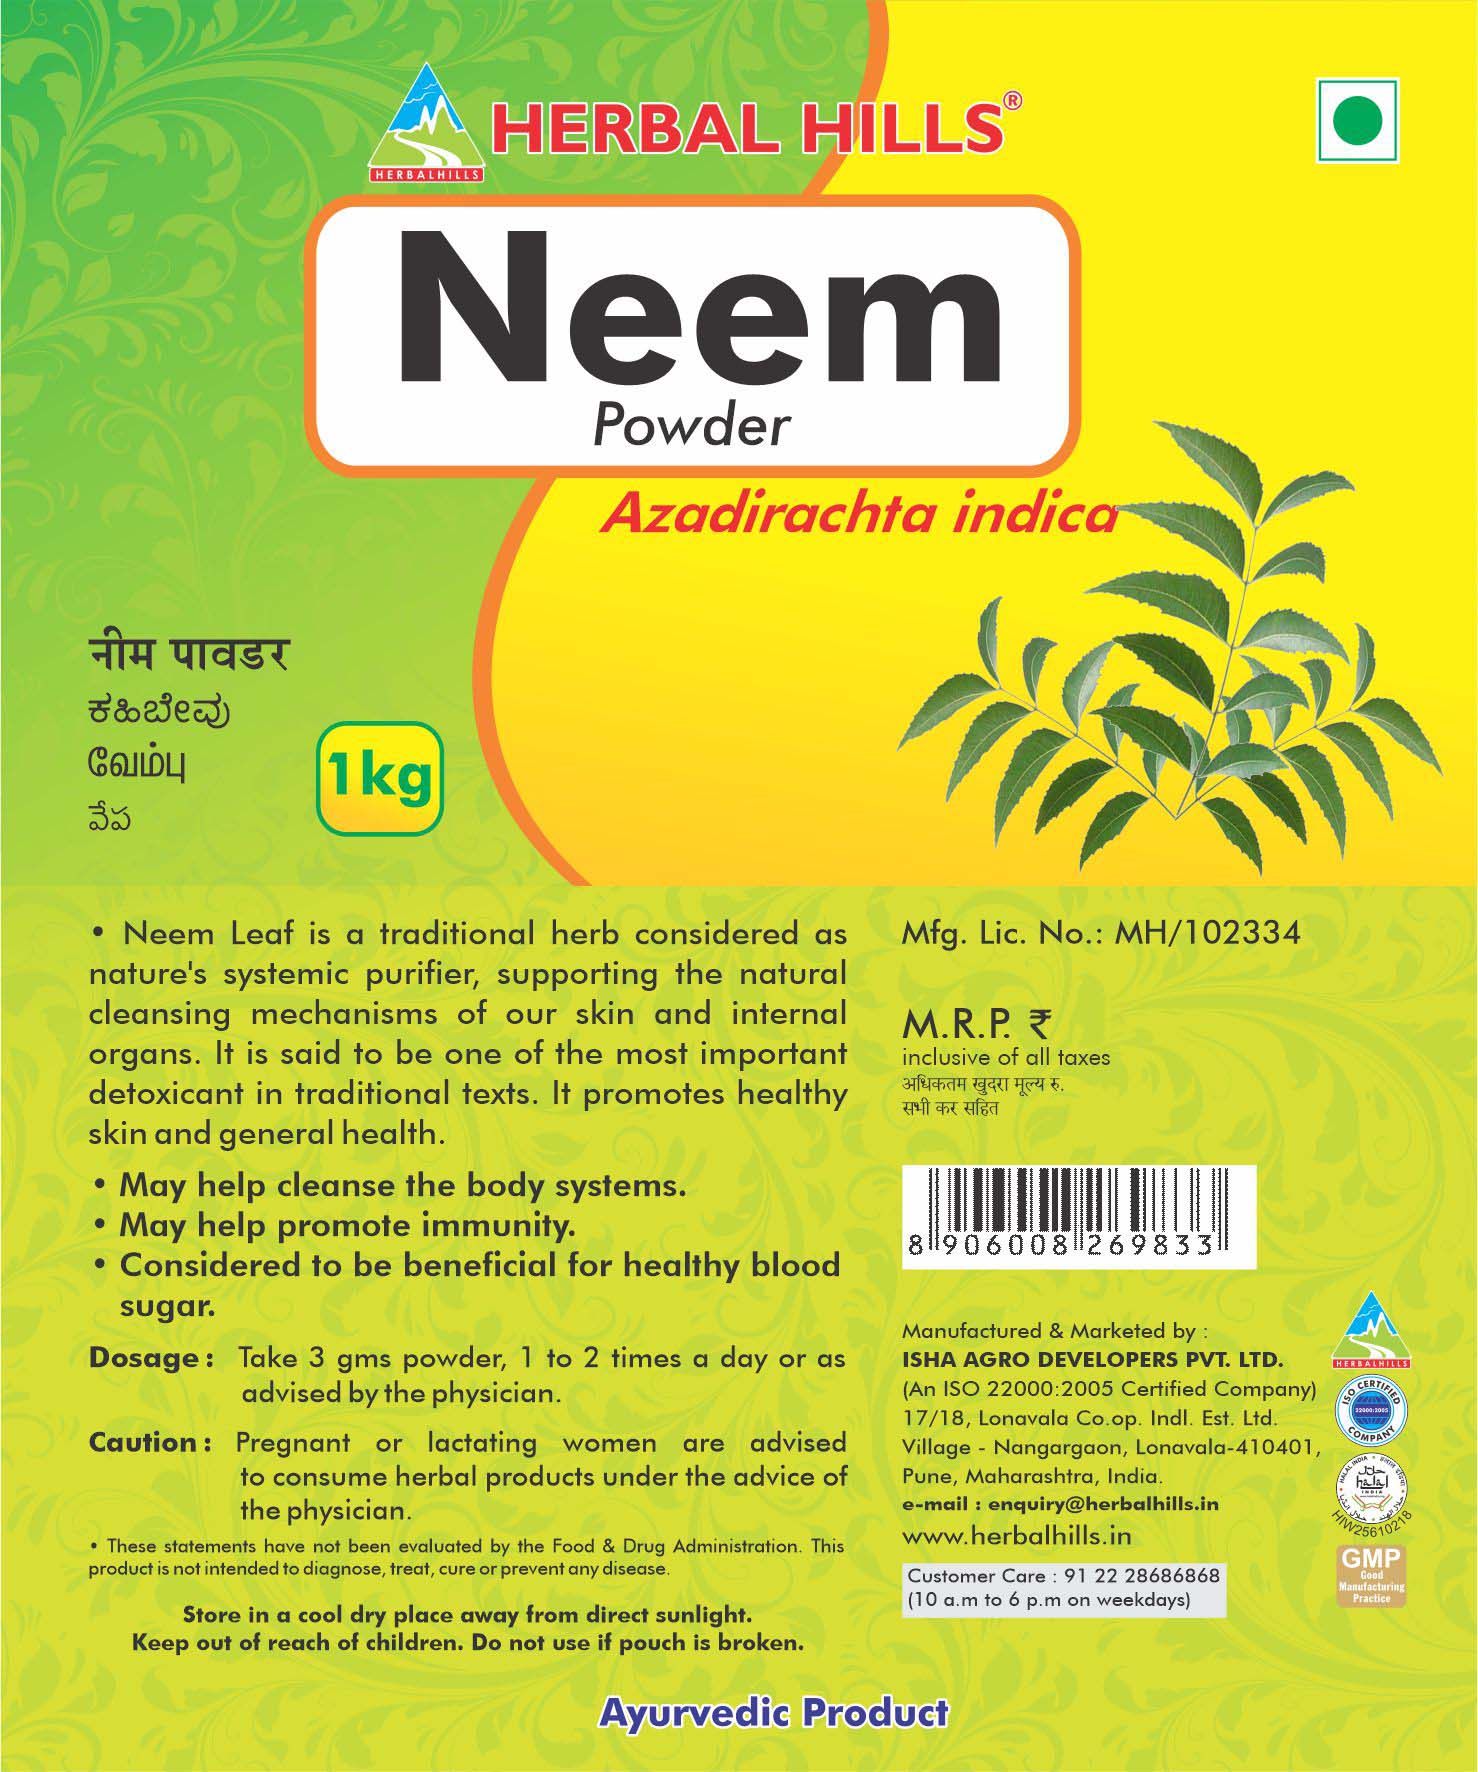 Buy Herbal Hills Neem patra powder at Best Price Online